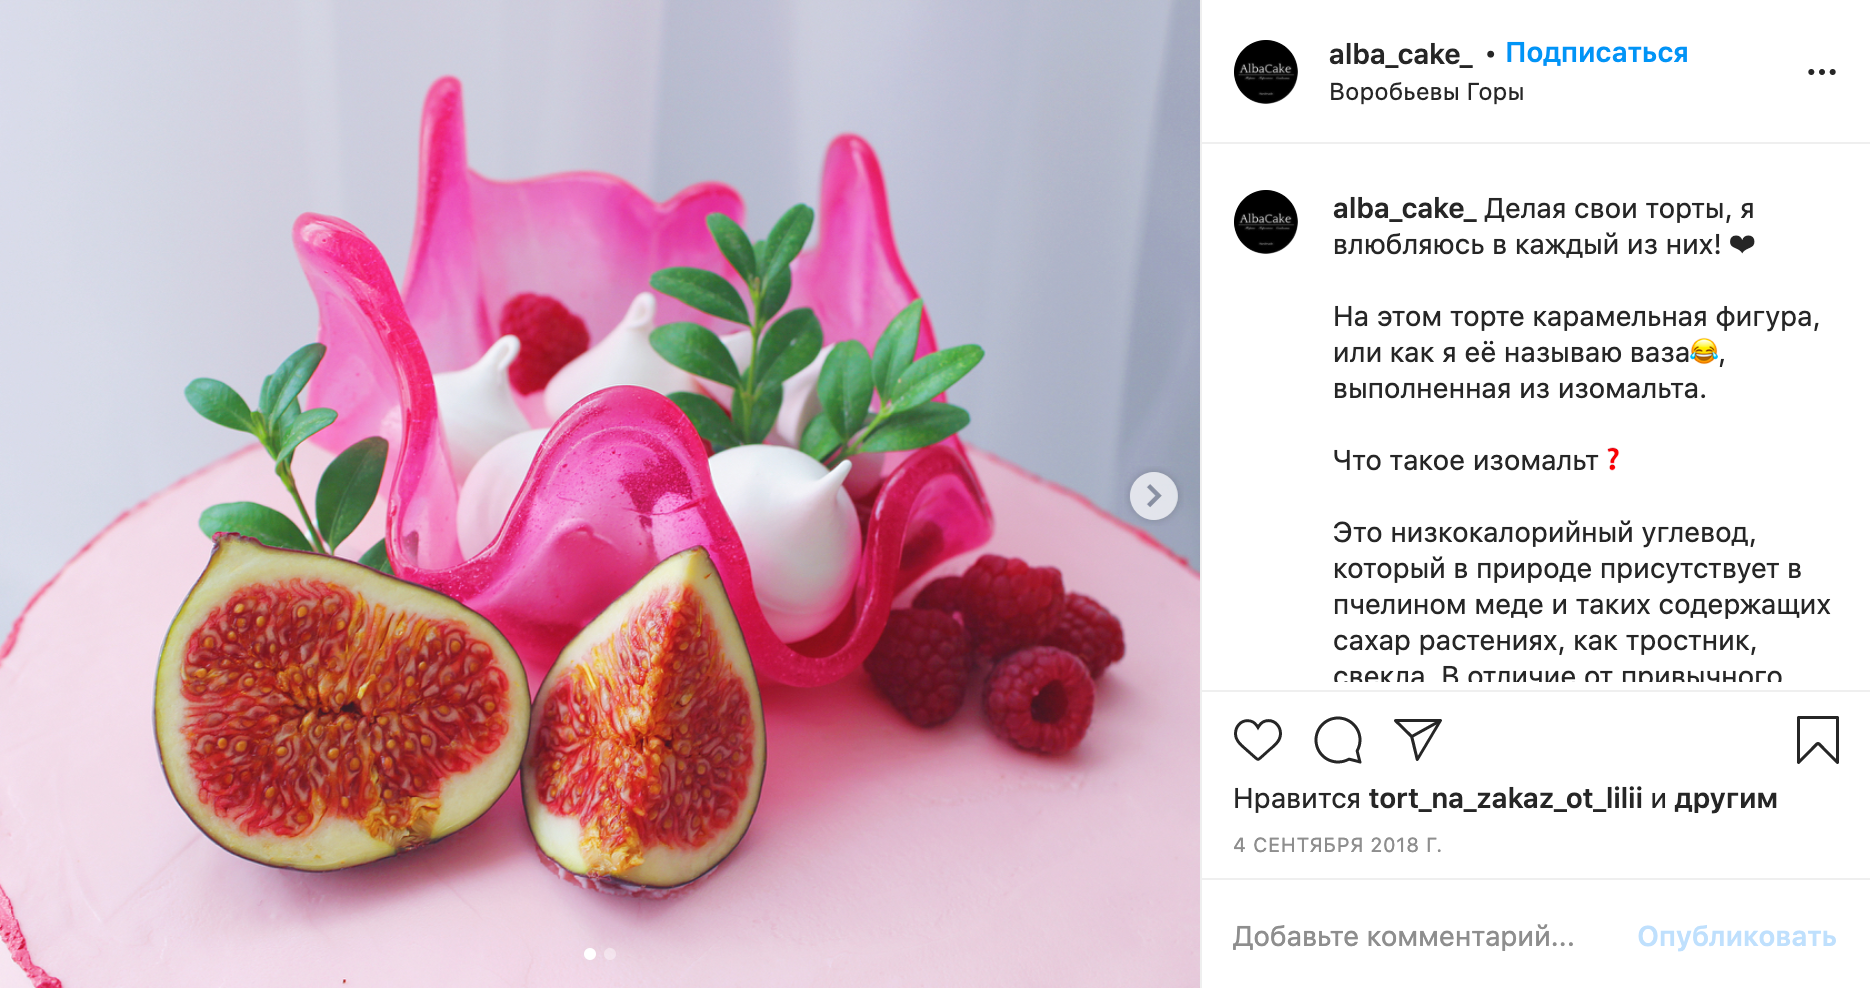 Это изомальтовая «ваза» с фруктами. У одного кондитера из Москвы такой декор стоит 800 ₽. А сам торт — 1800 ₽ за 1 кг. То есть 2 кг торта с декором обойдутся в 4400 ₽